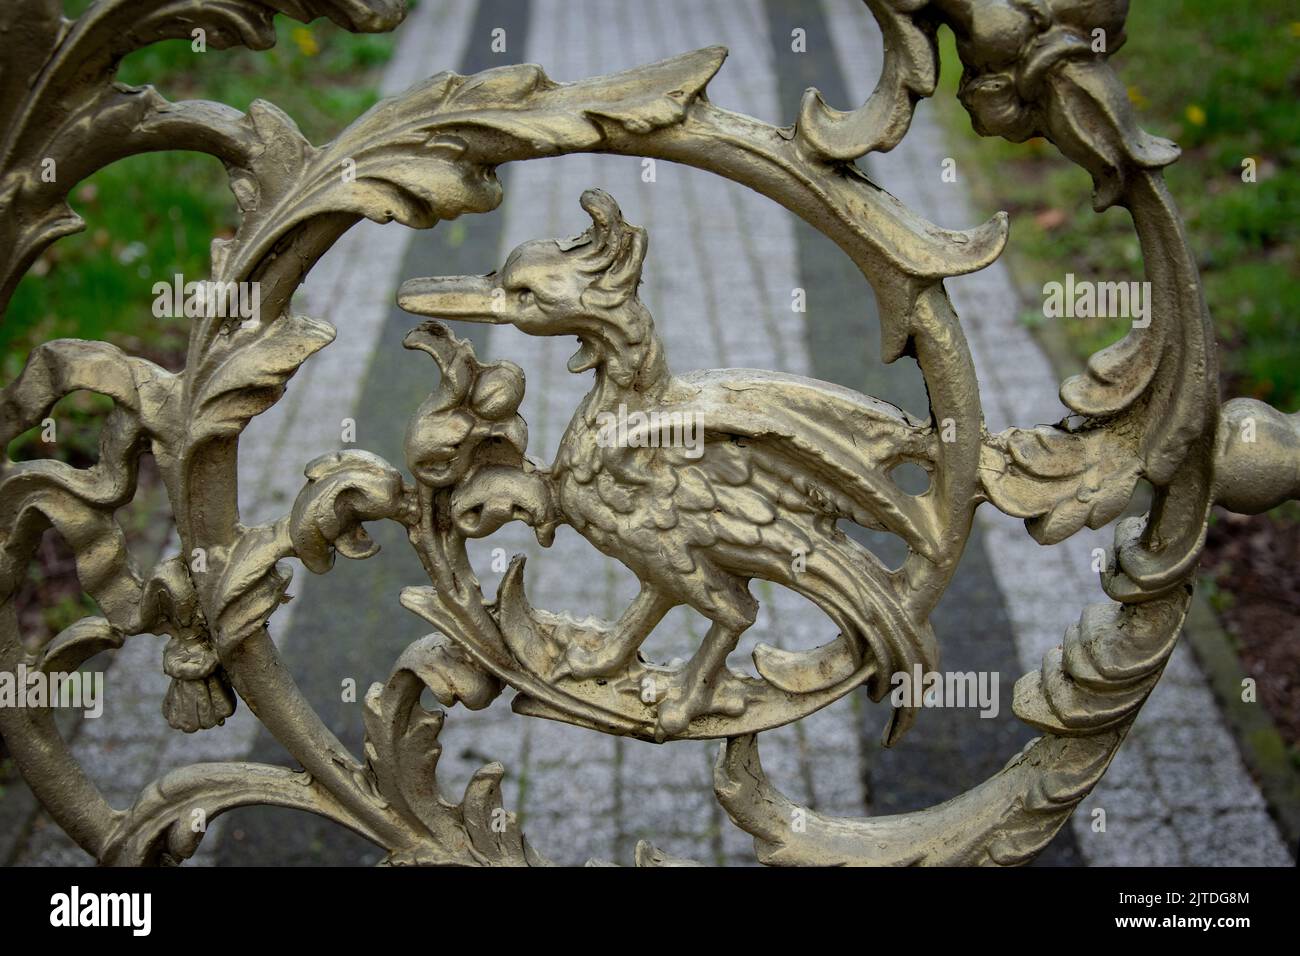 Kunstvolle Metallarbeiten, die phönix mythischen Vogel darstellen Stockfoto